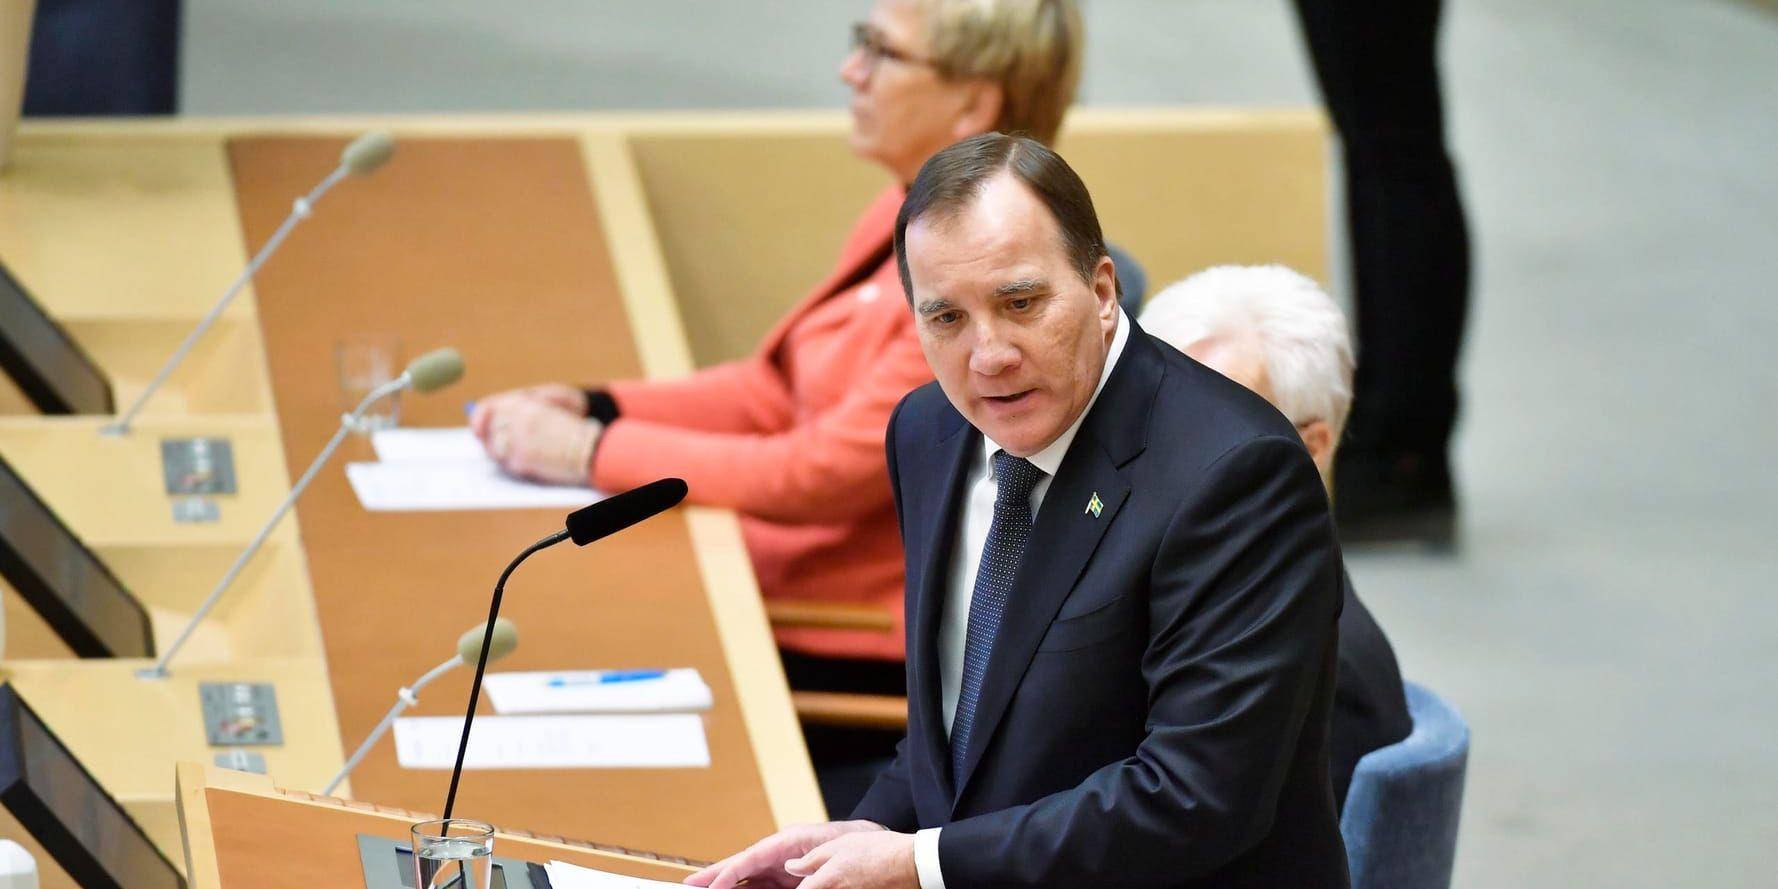 Statsminister Stefan Löfven (S) läser regeringsförklaringen i rikdagens kammare.